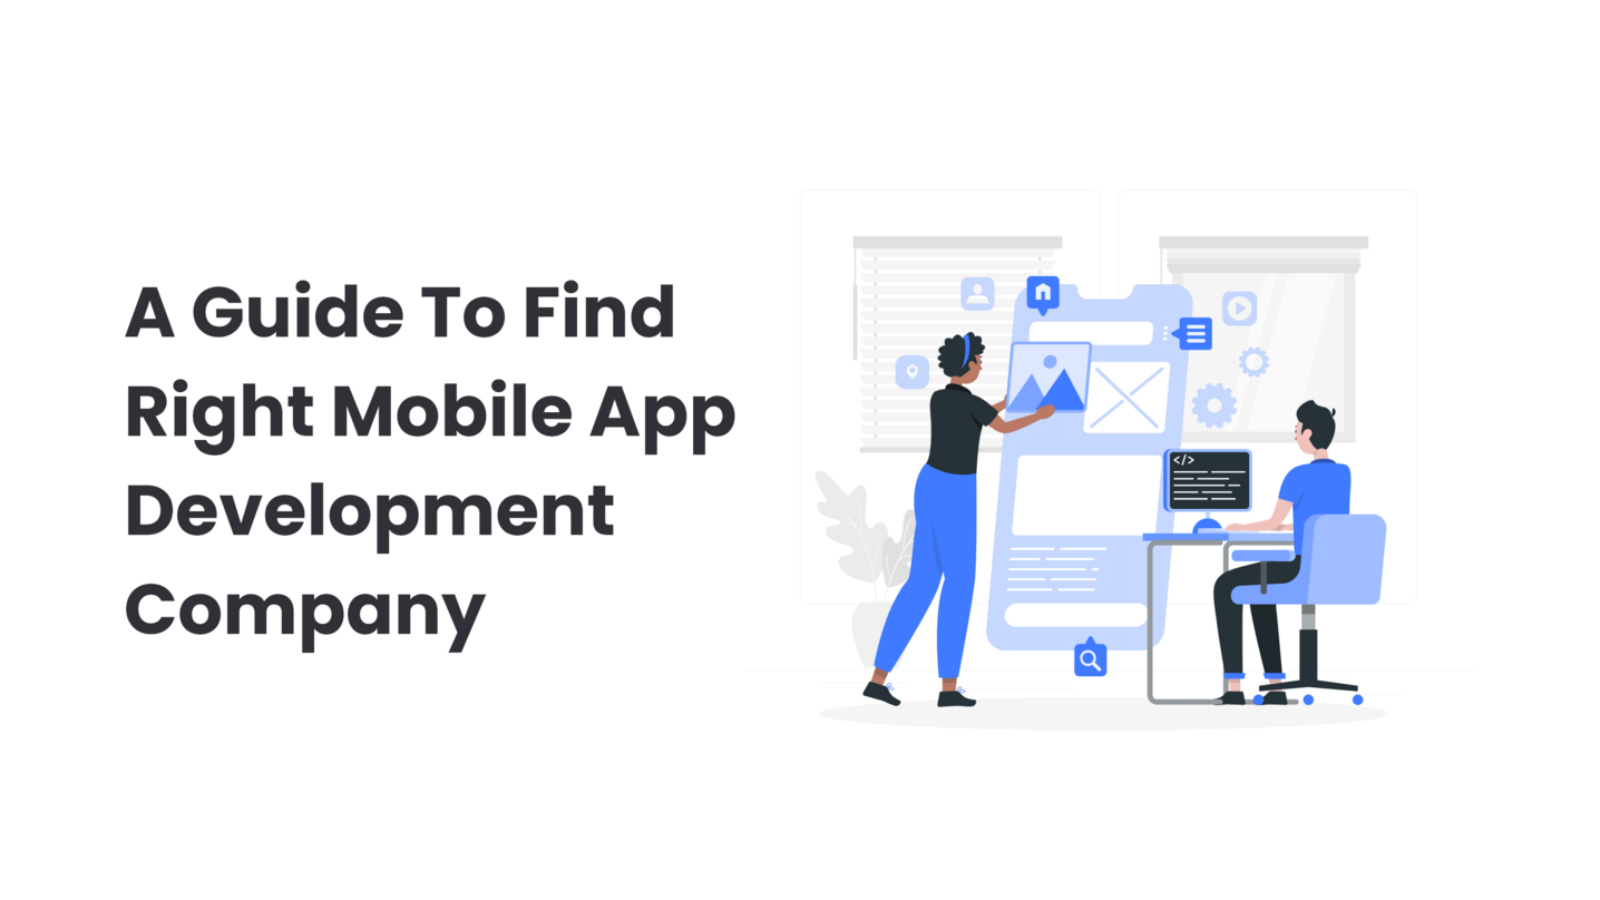 Right Mobile App Development Company